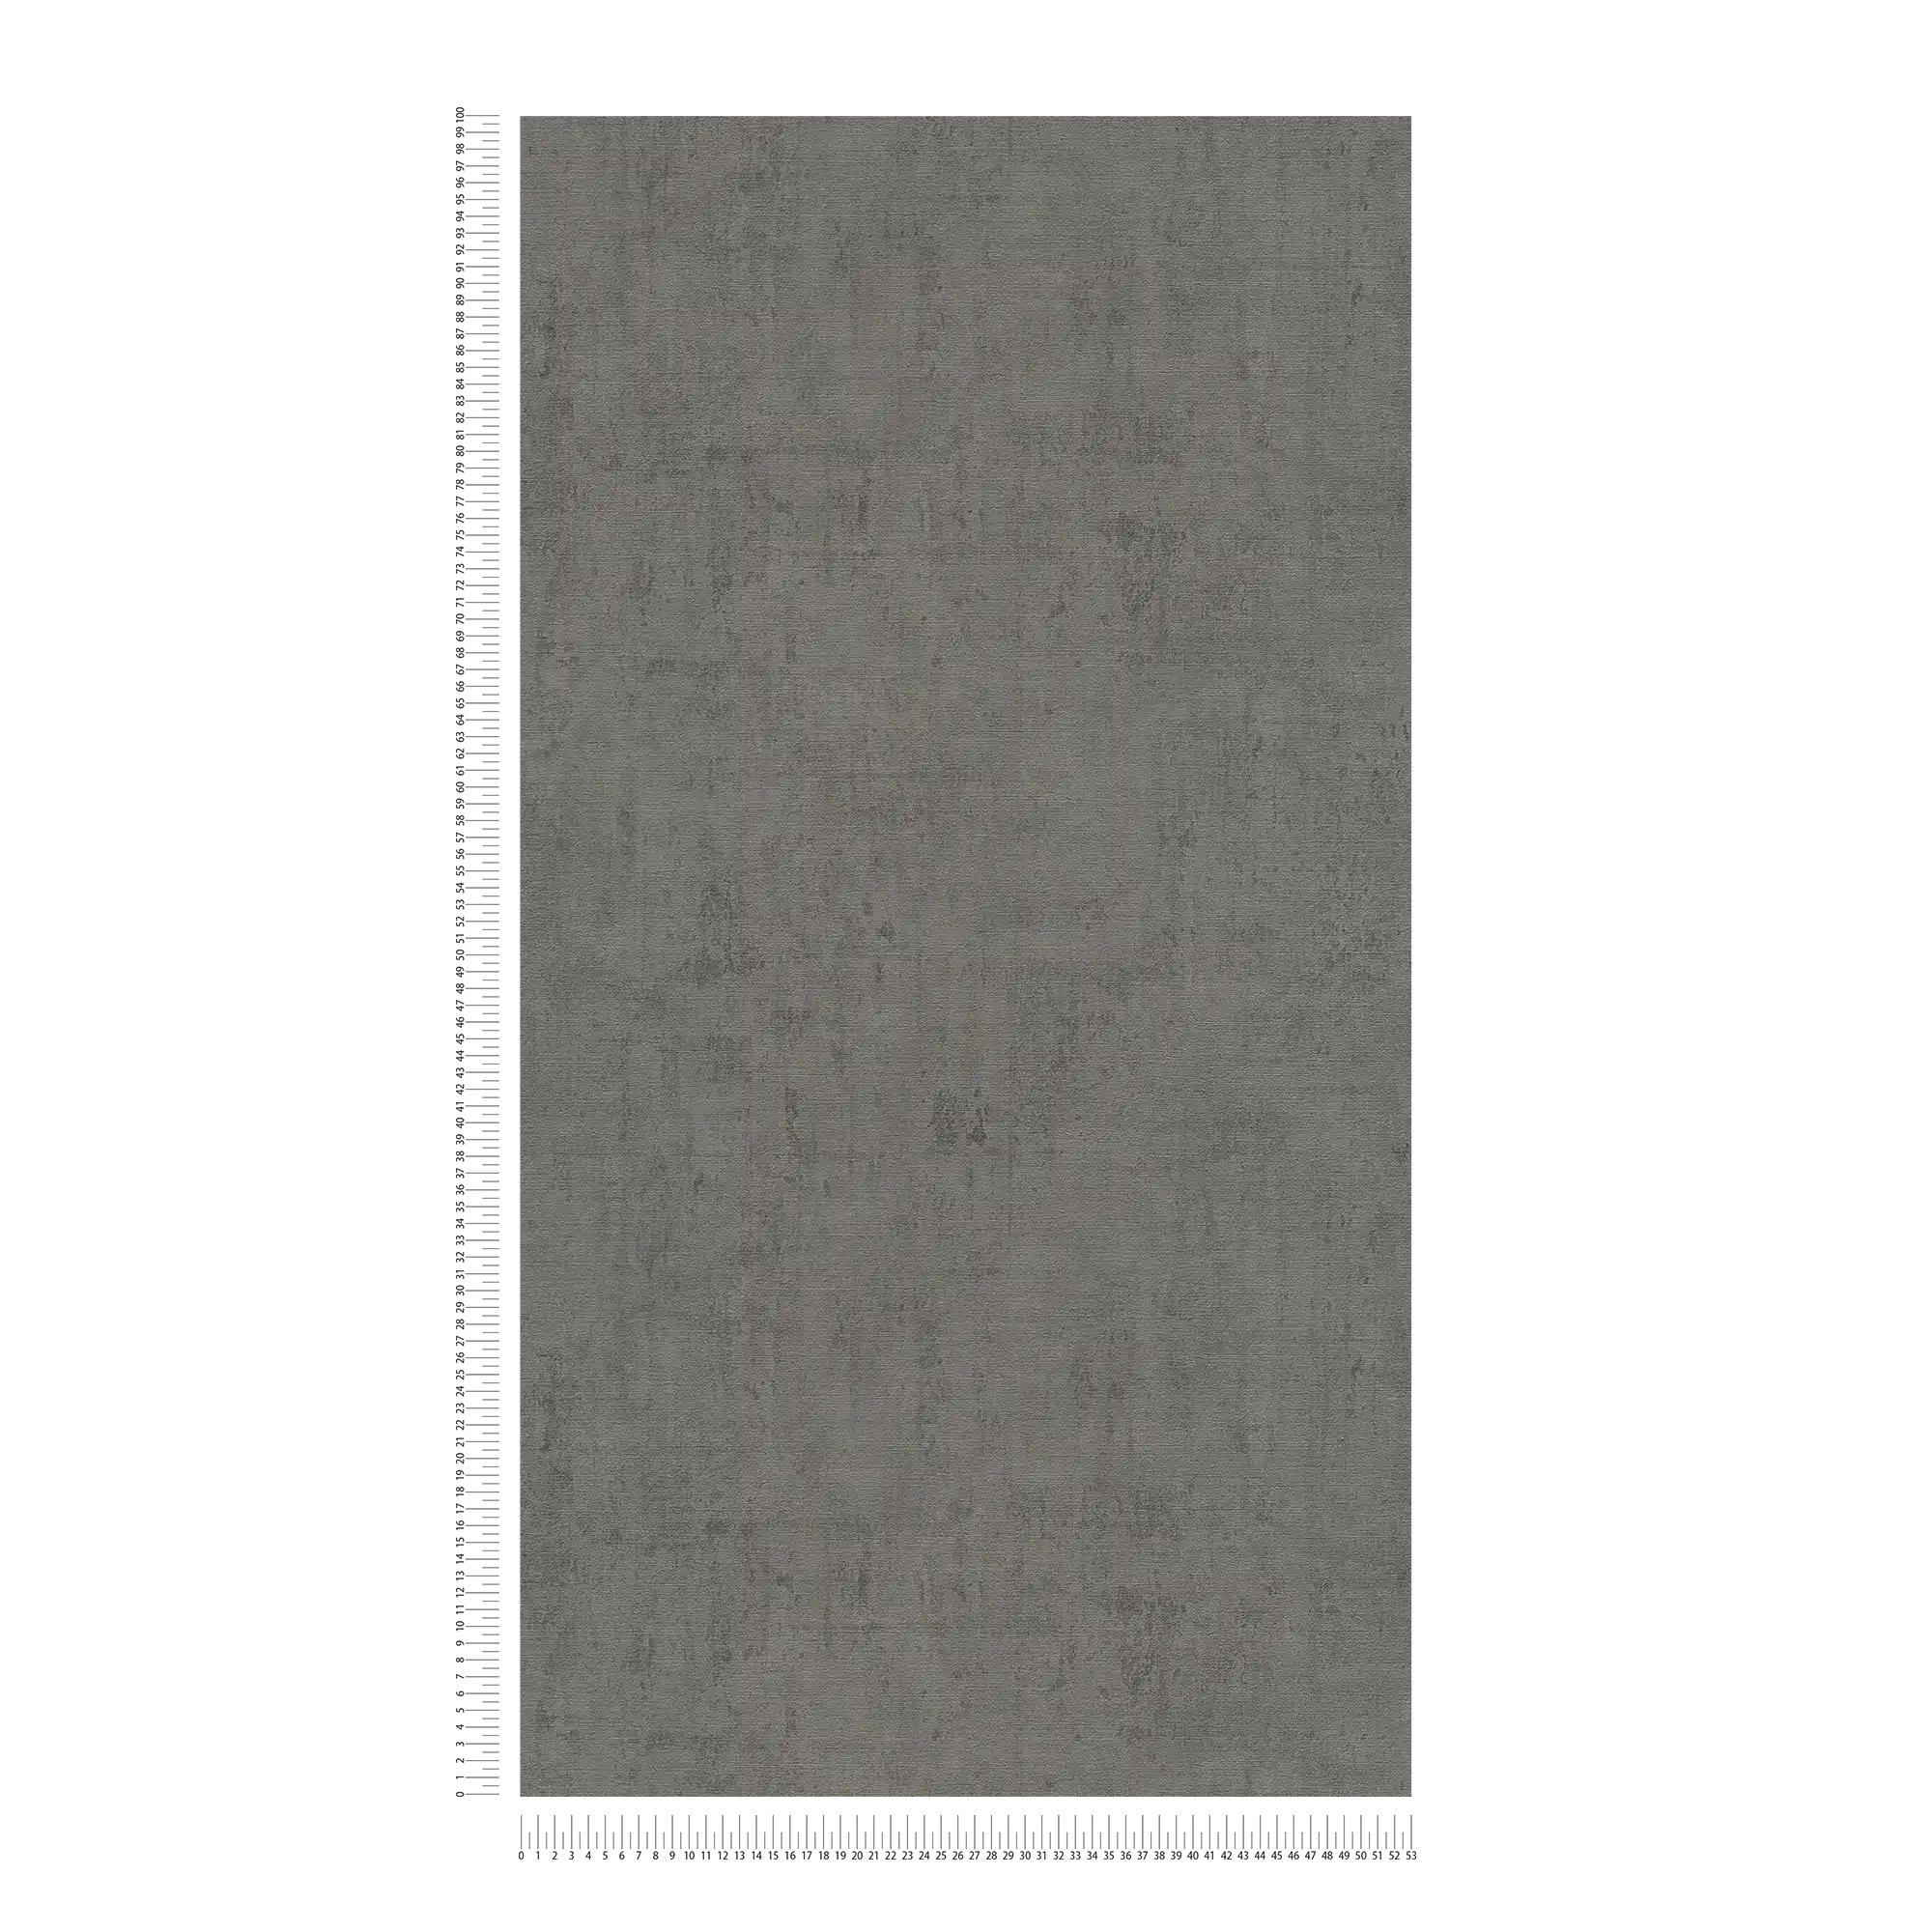             Papel pintado de color gris oscuro con estructura de yeso y en relieve
        